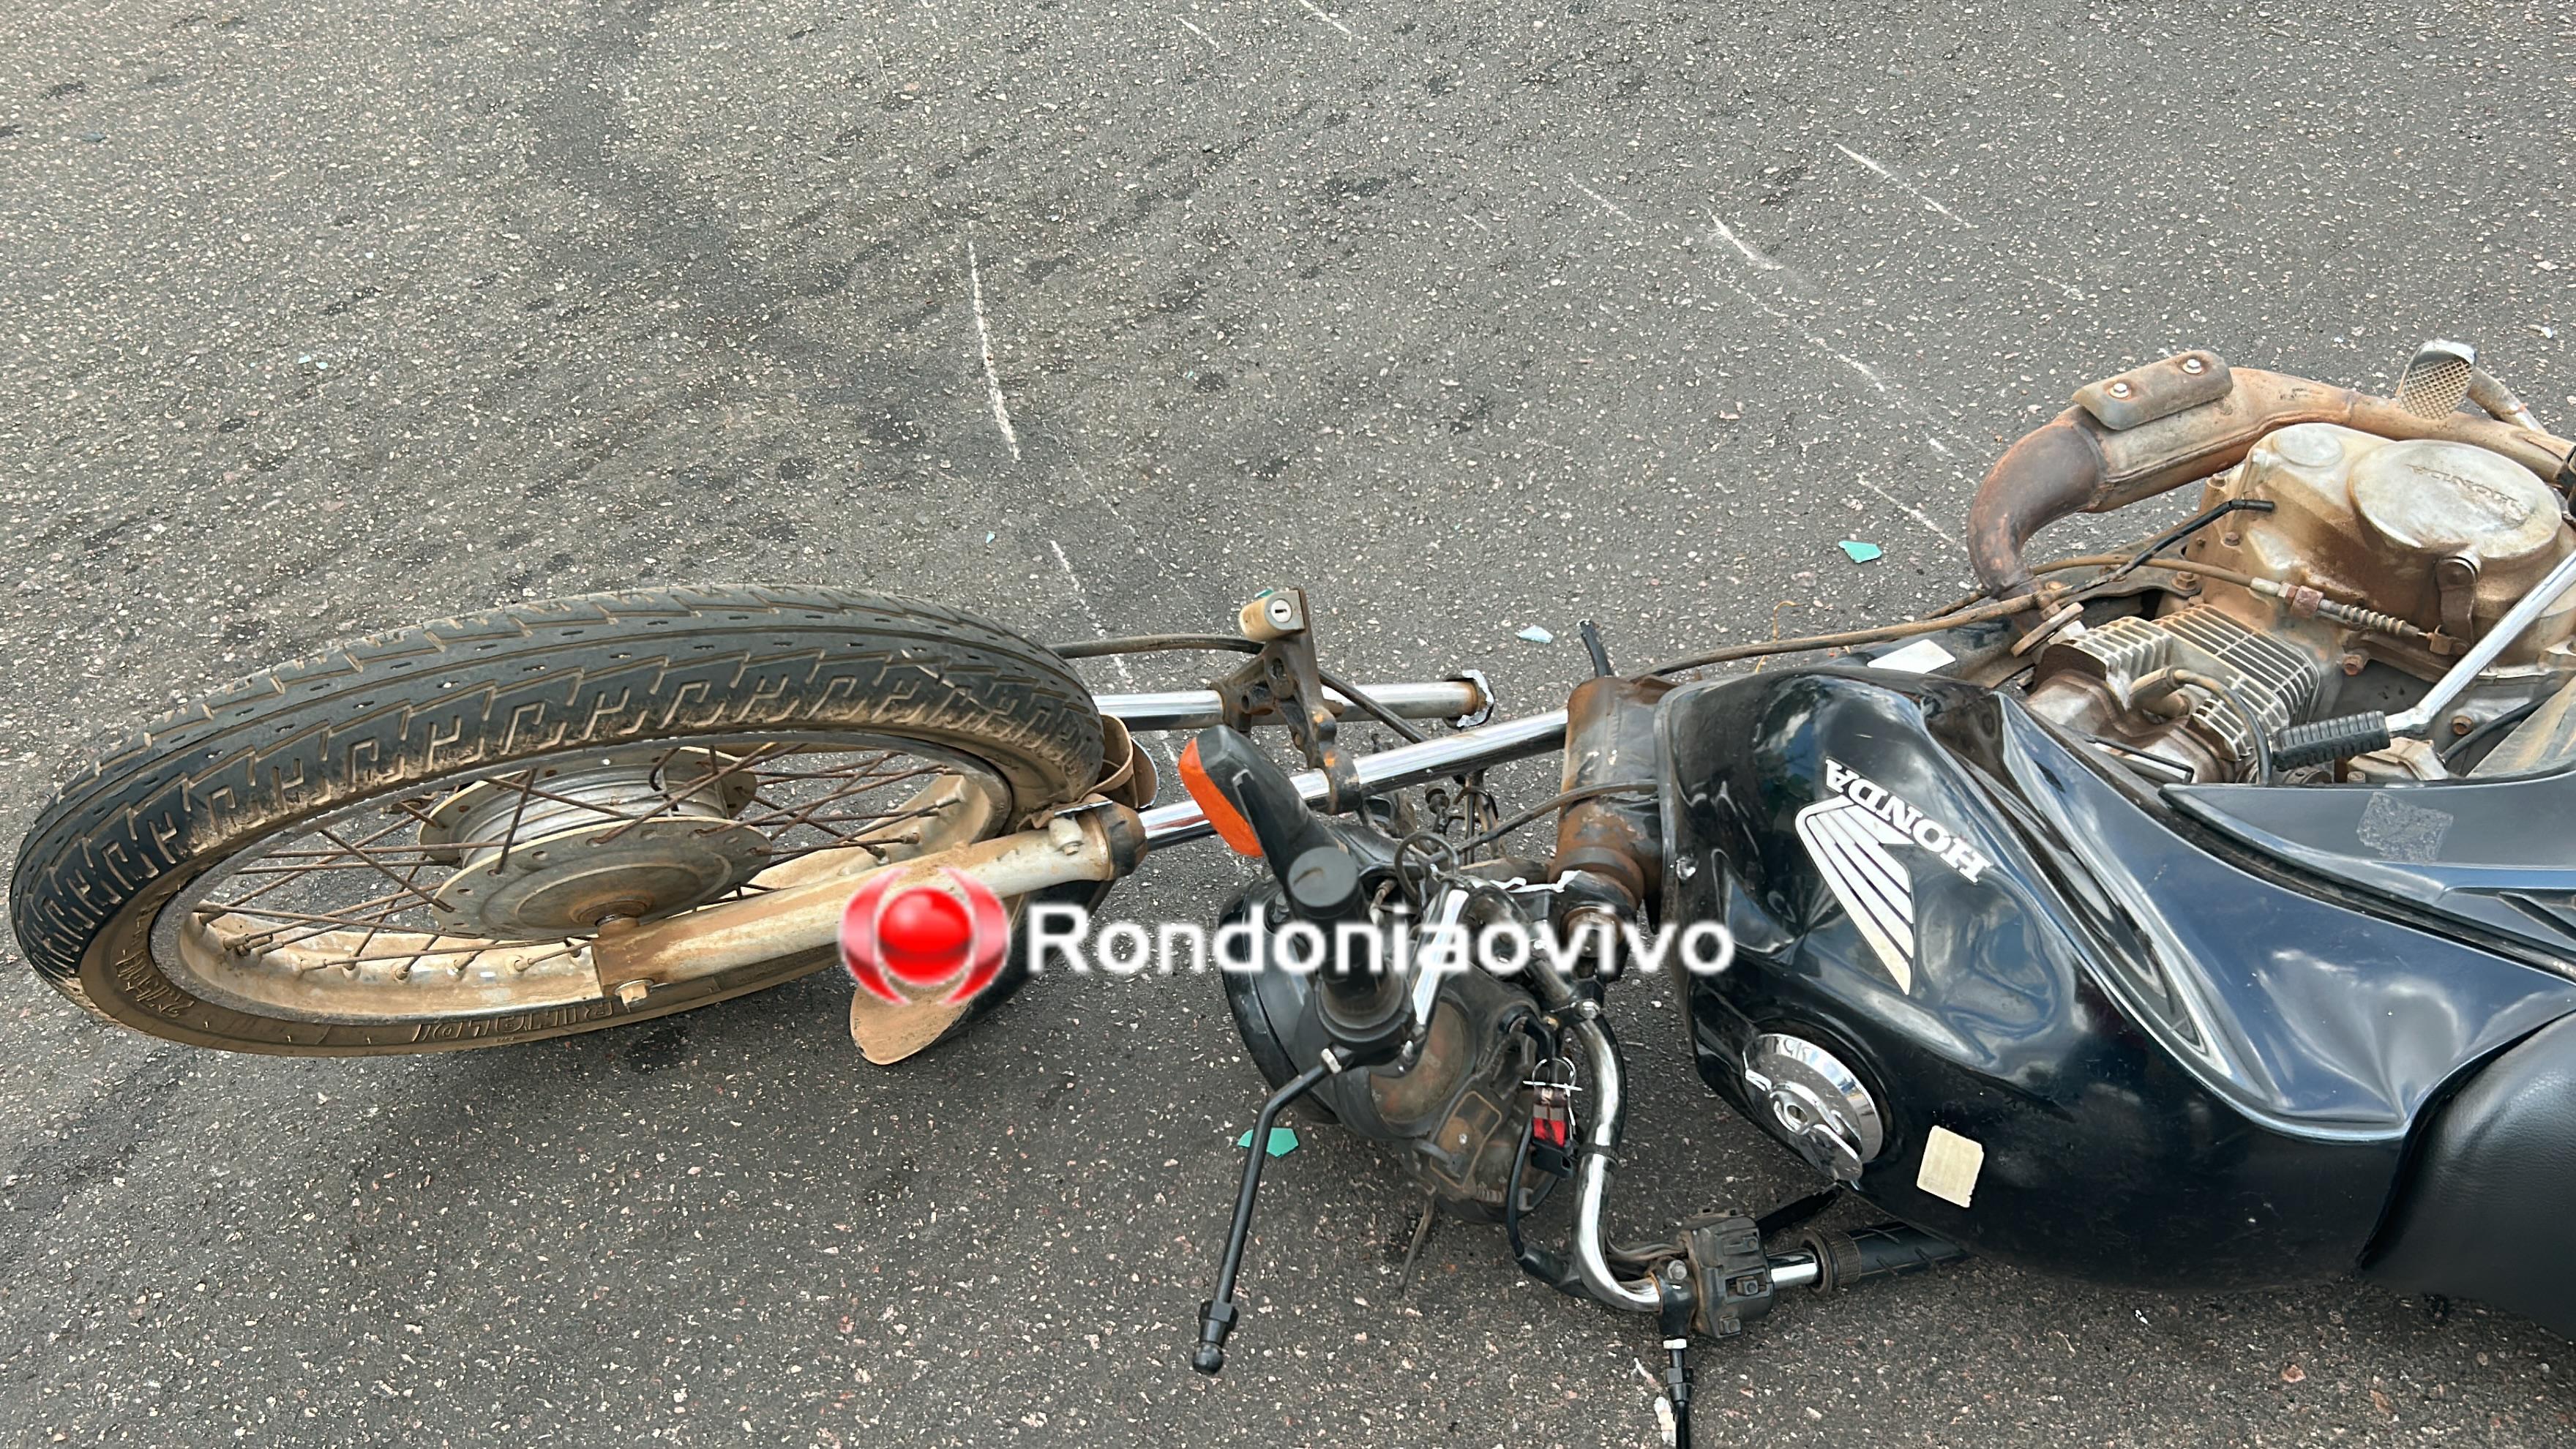 VÍDEO: Grave colisão entre motos deixa homem e mulher feridos na Rio Madeira